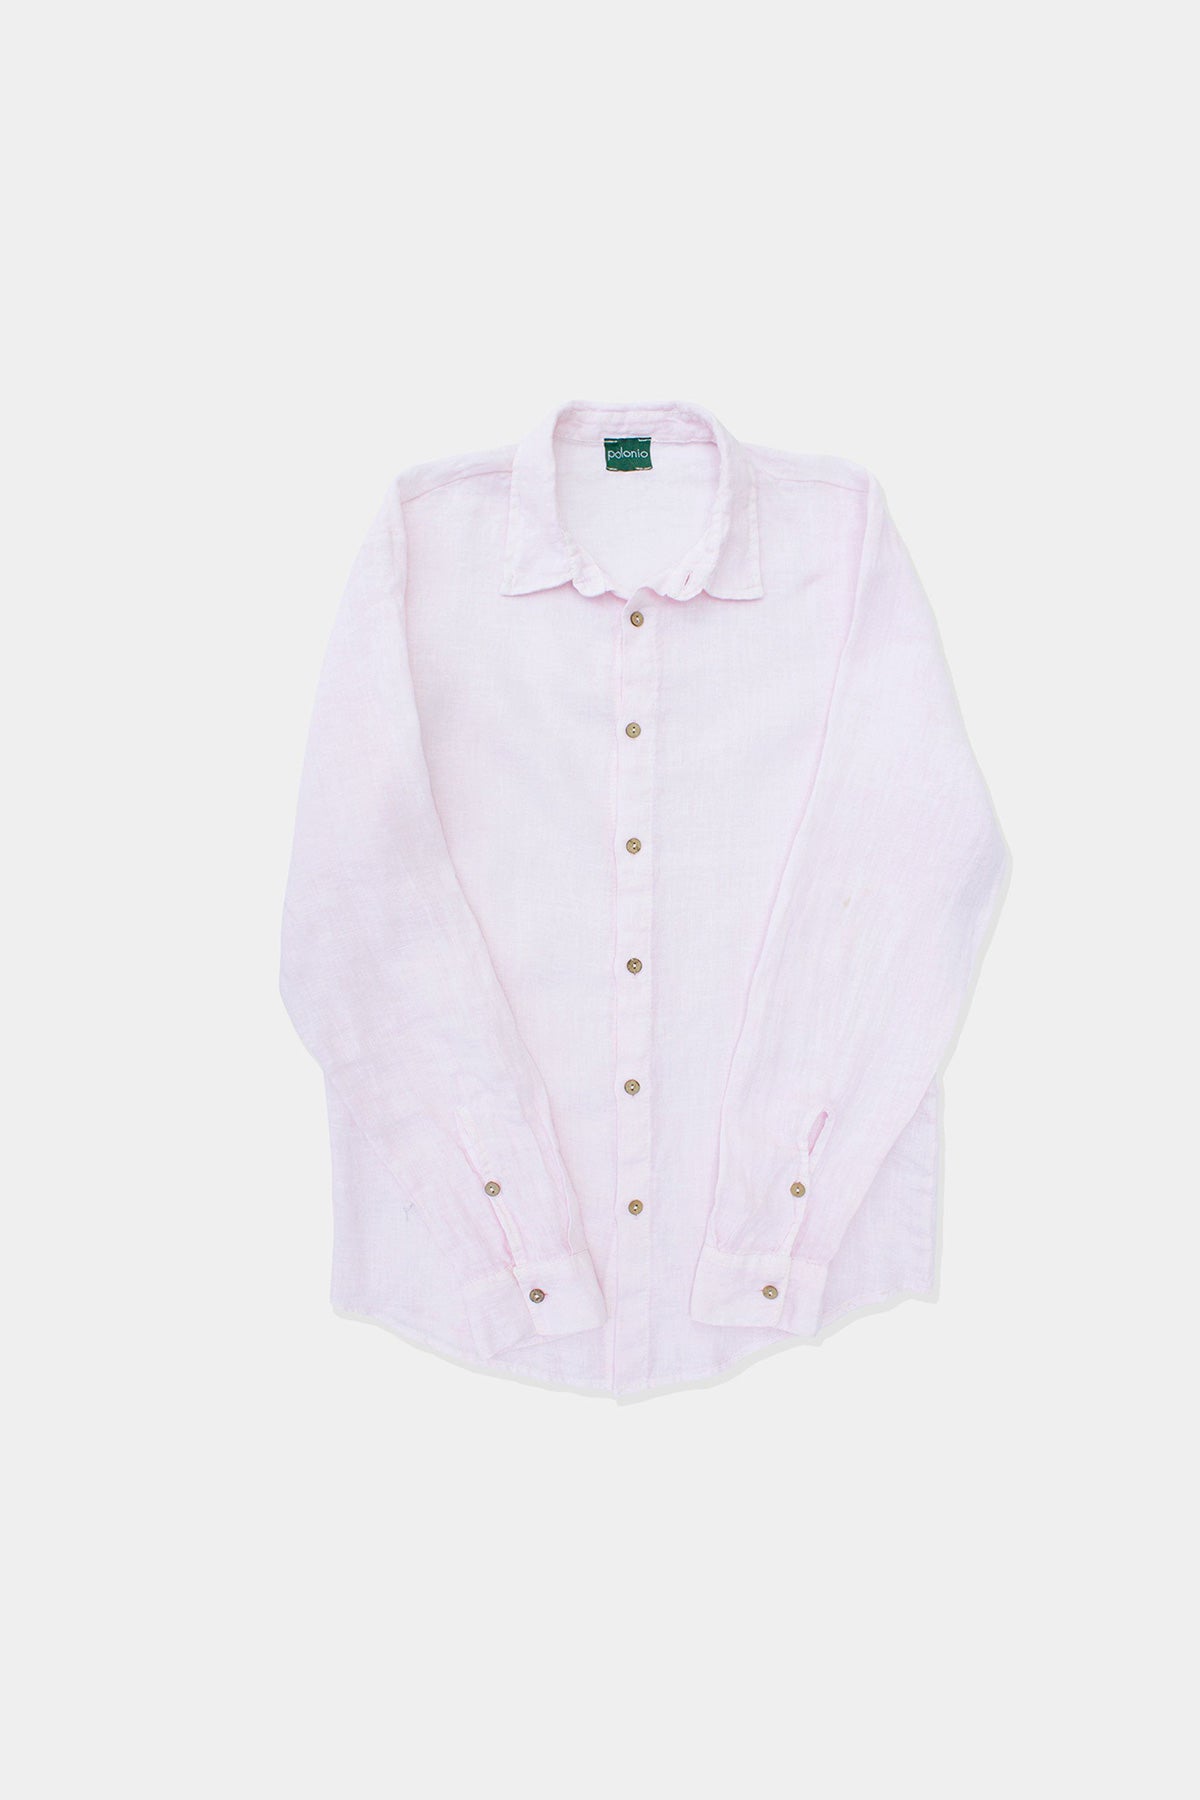 Confetti Slim Fit Linen Shirt - Polonio